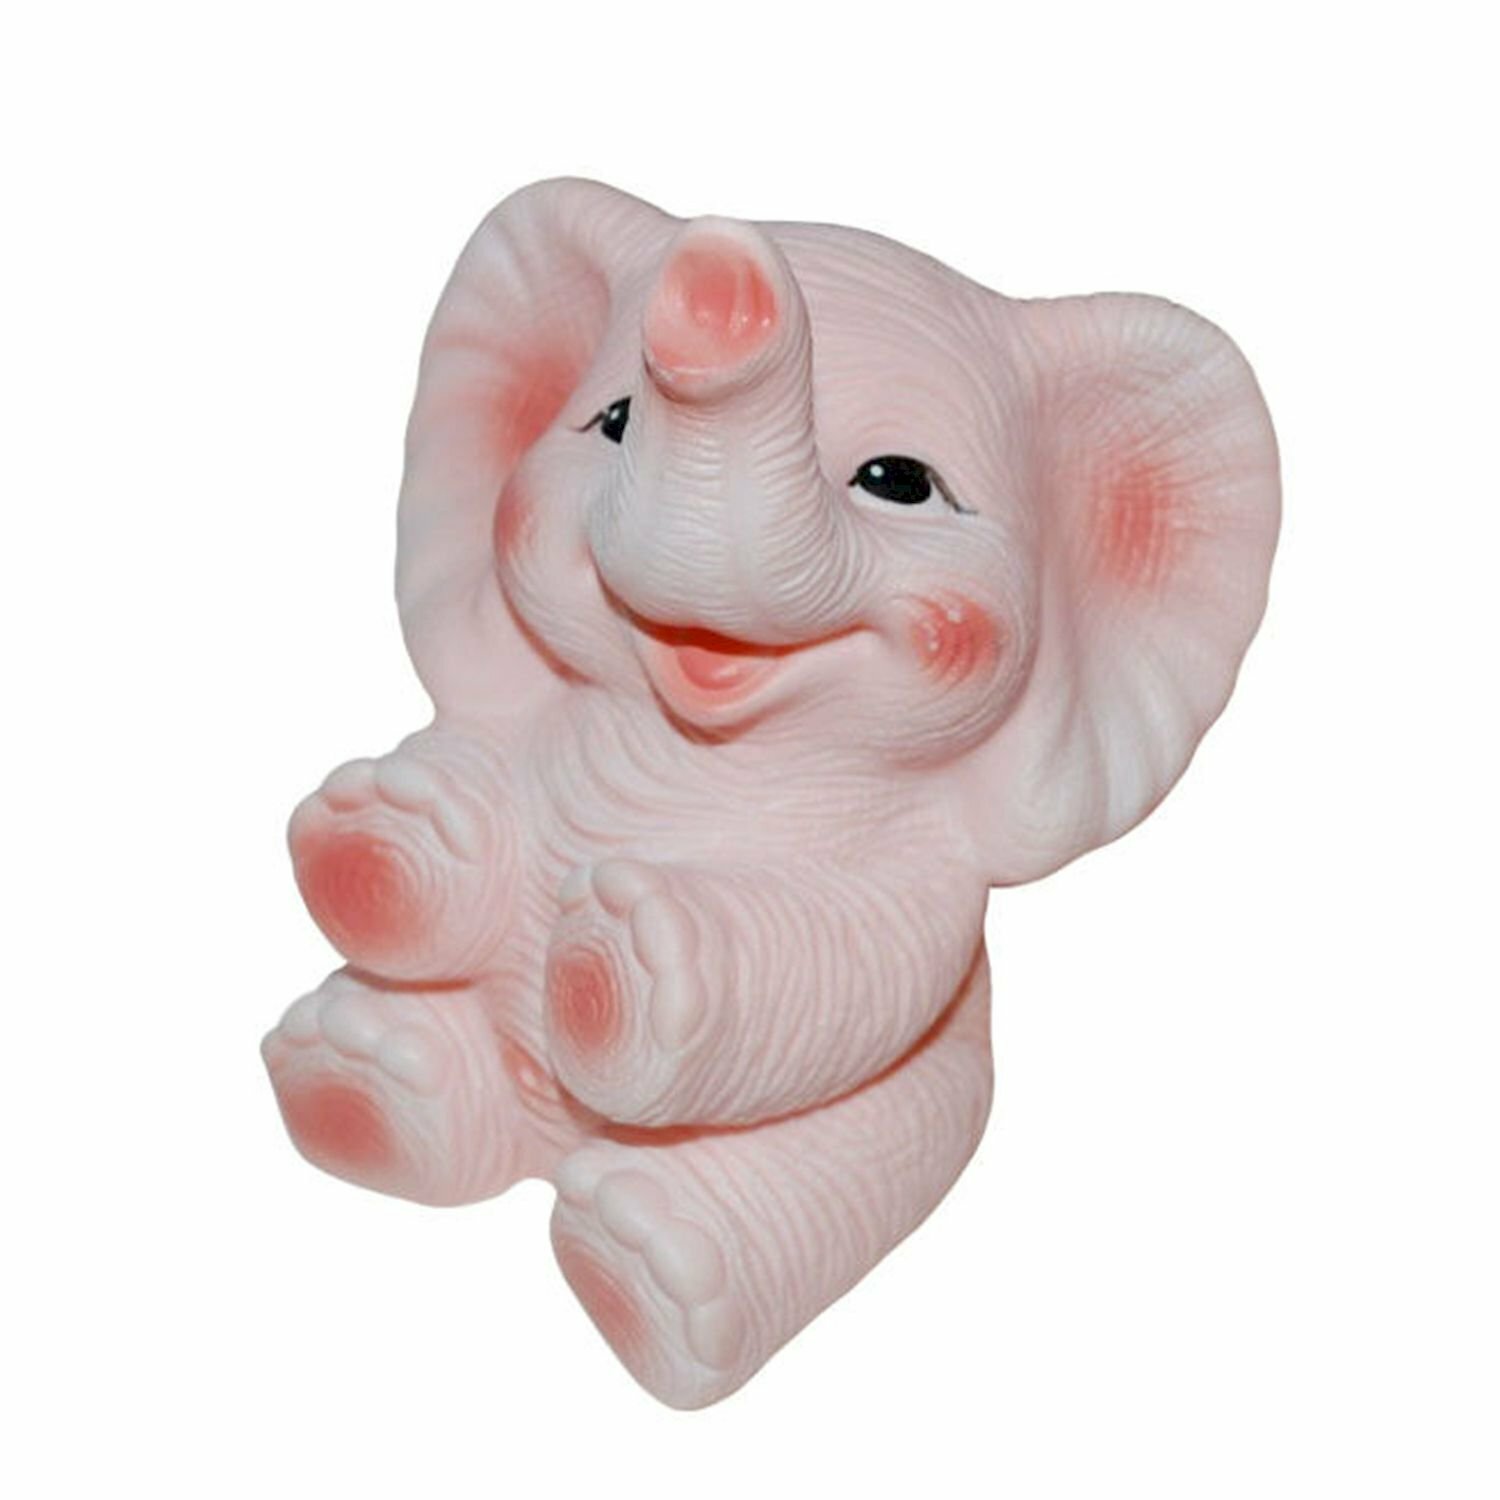 Игрушка для ванны Огонек "Слон Бубо", пластизоль, 18 см